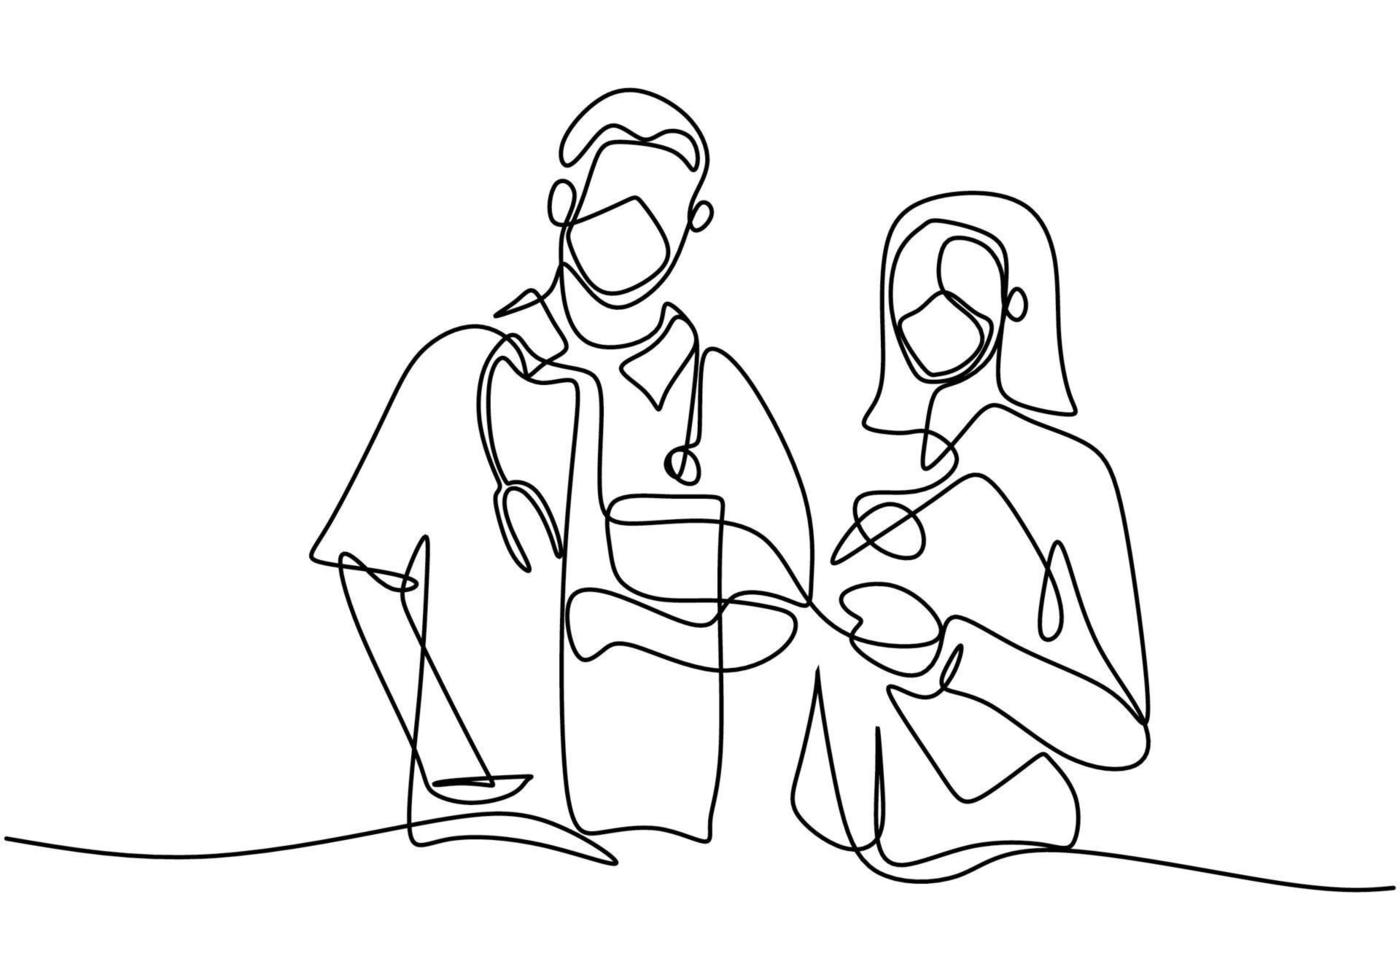 un unico disegno a tratteggio di medico professionista e infermiere in maschera facciale in piedi in posa insieme. lavoro di squadra medico per contro il coronavirus isolato su sfondo bianco. stile minimalista. vettore